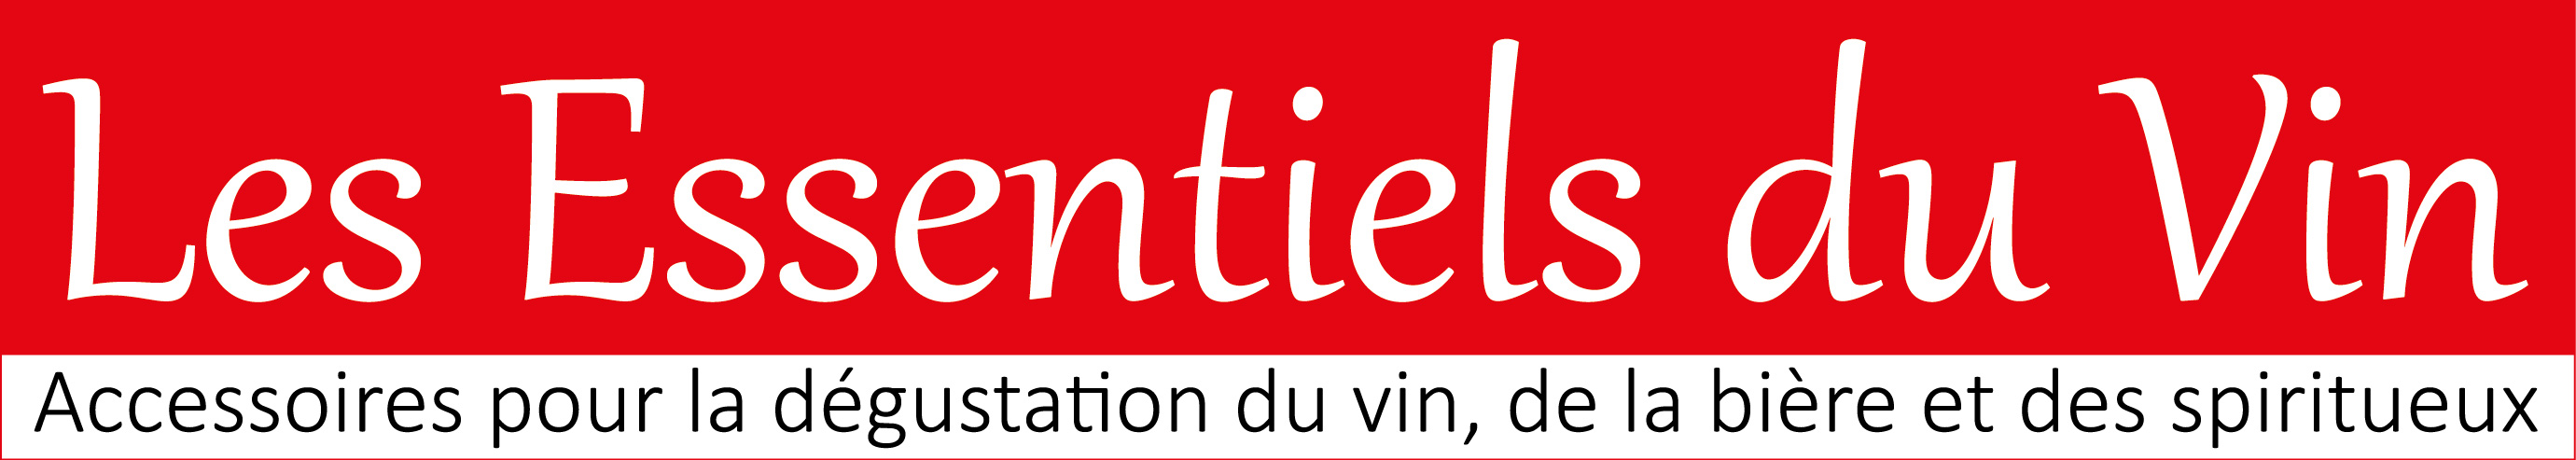 Logo Les Essentiels du Vin + base line